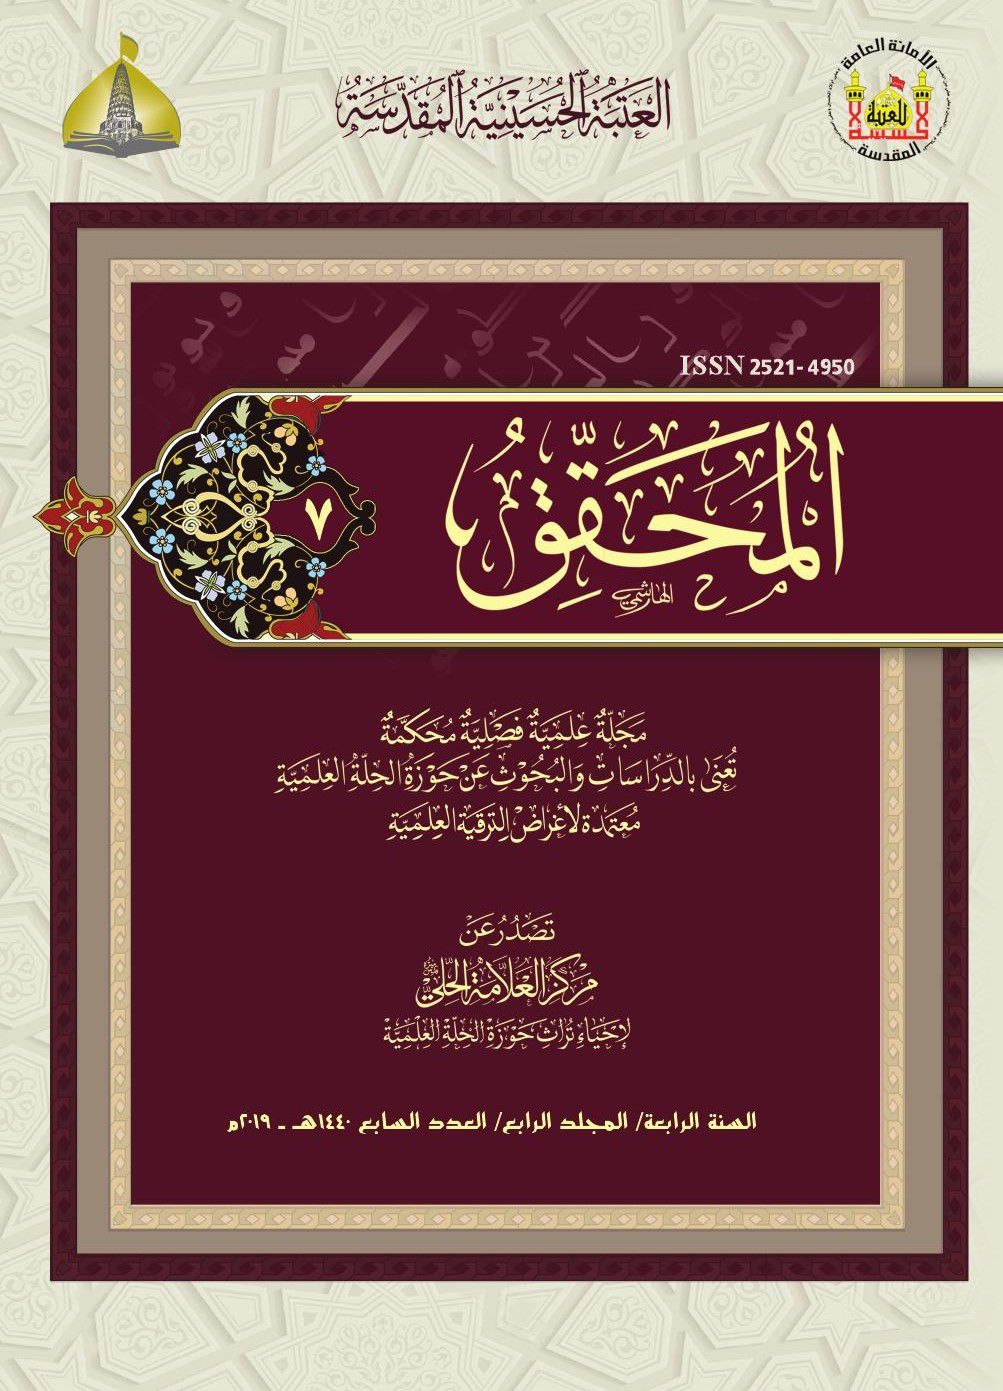 					معاينة مجلد 4 عدد 7 (2019): Al-Muhaqqiq
				